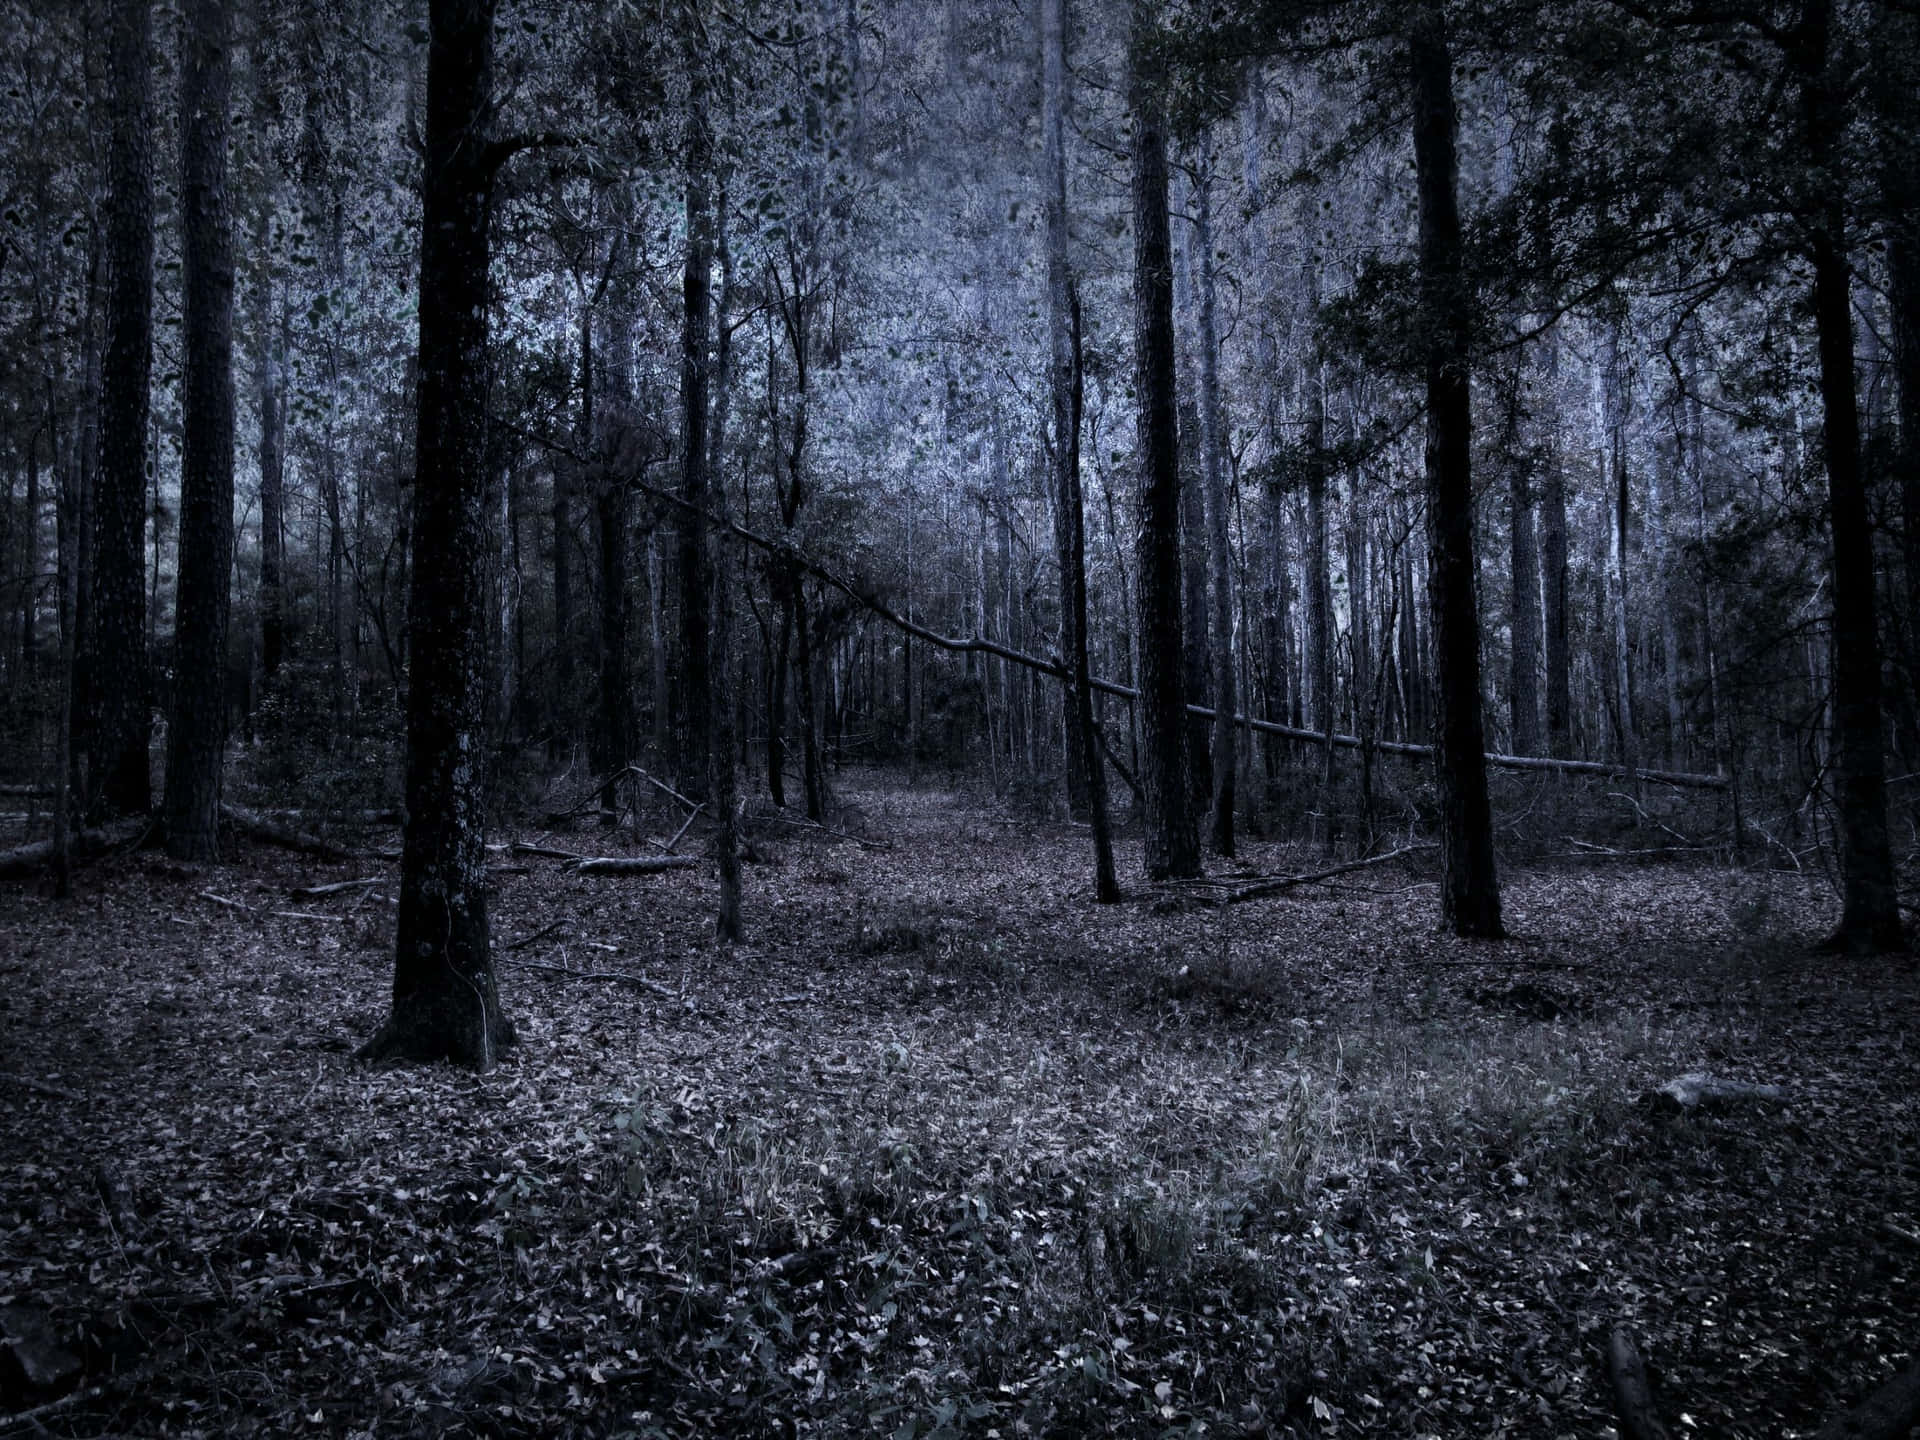 Dark Depressing Forest View